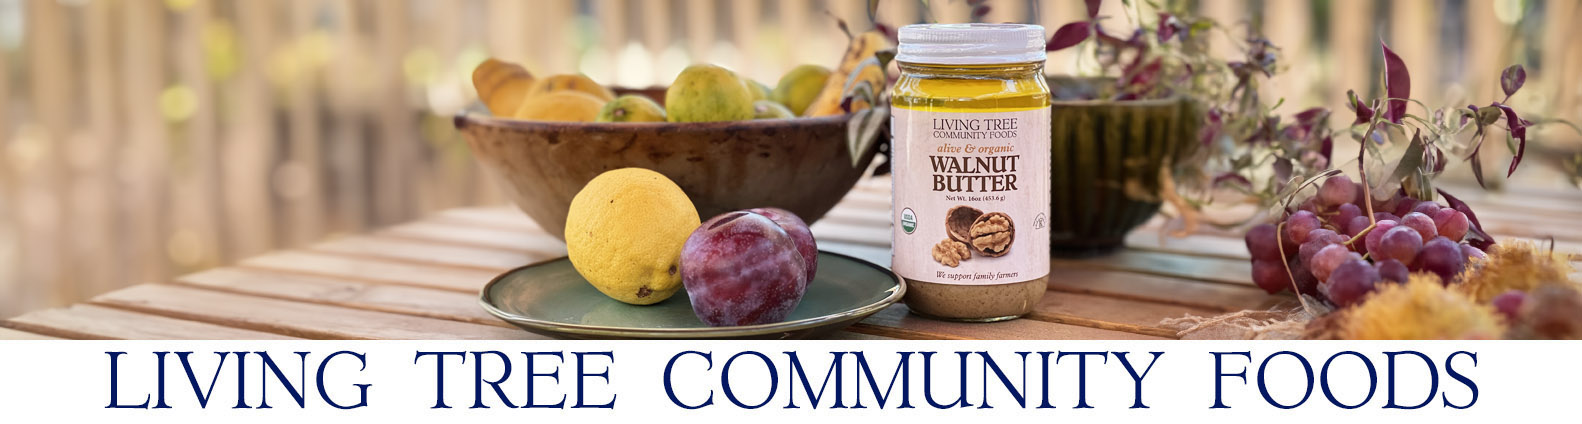 Walnut Butter Newsletter Header